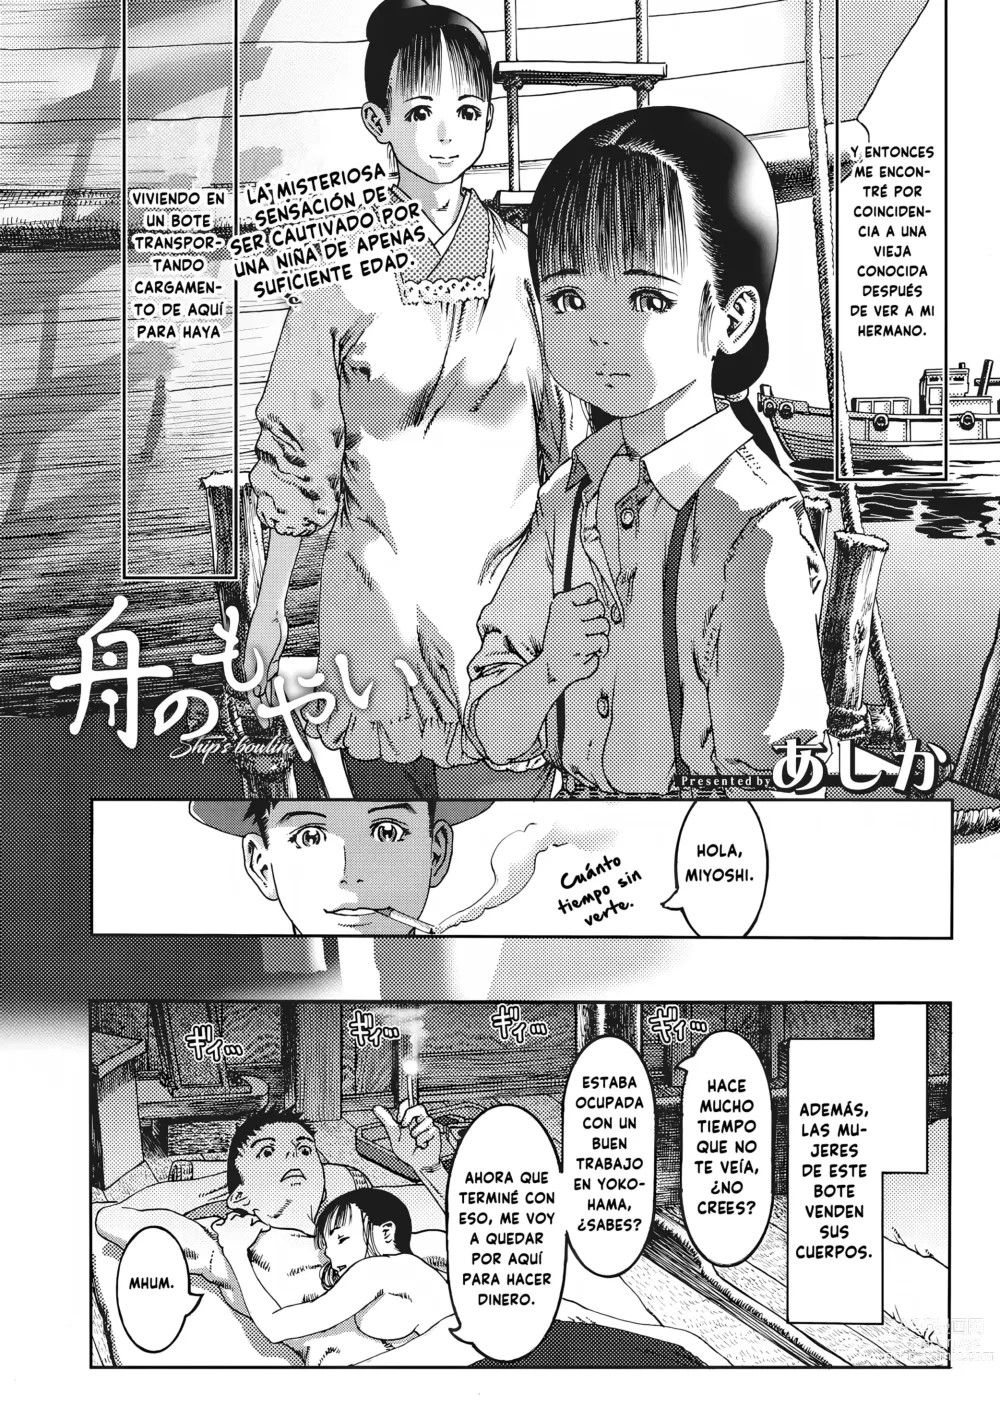 Page 2 of manga El cabo del bote